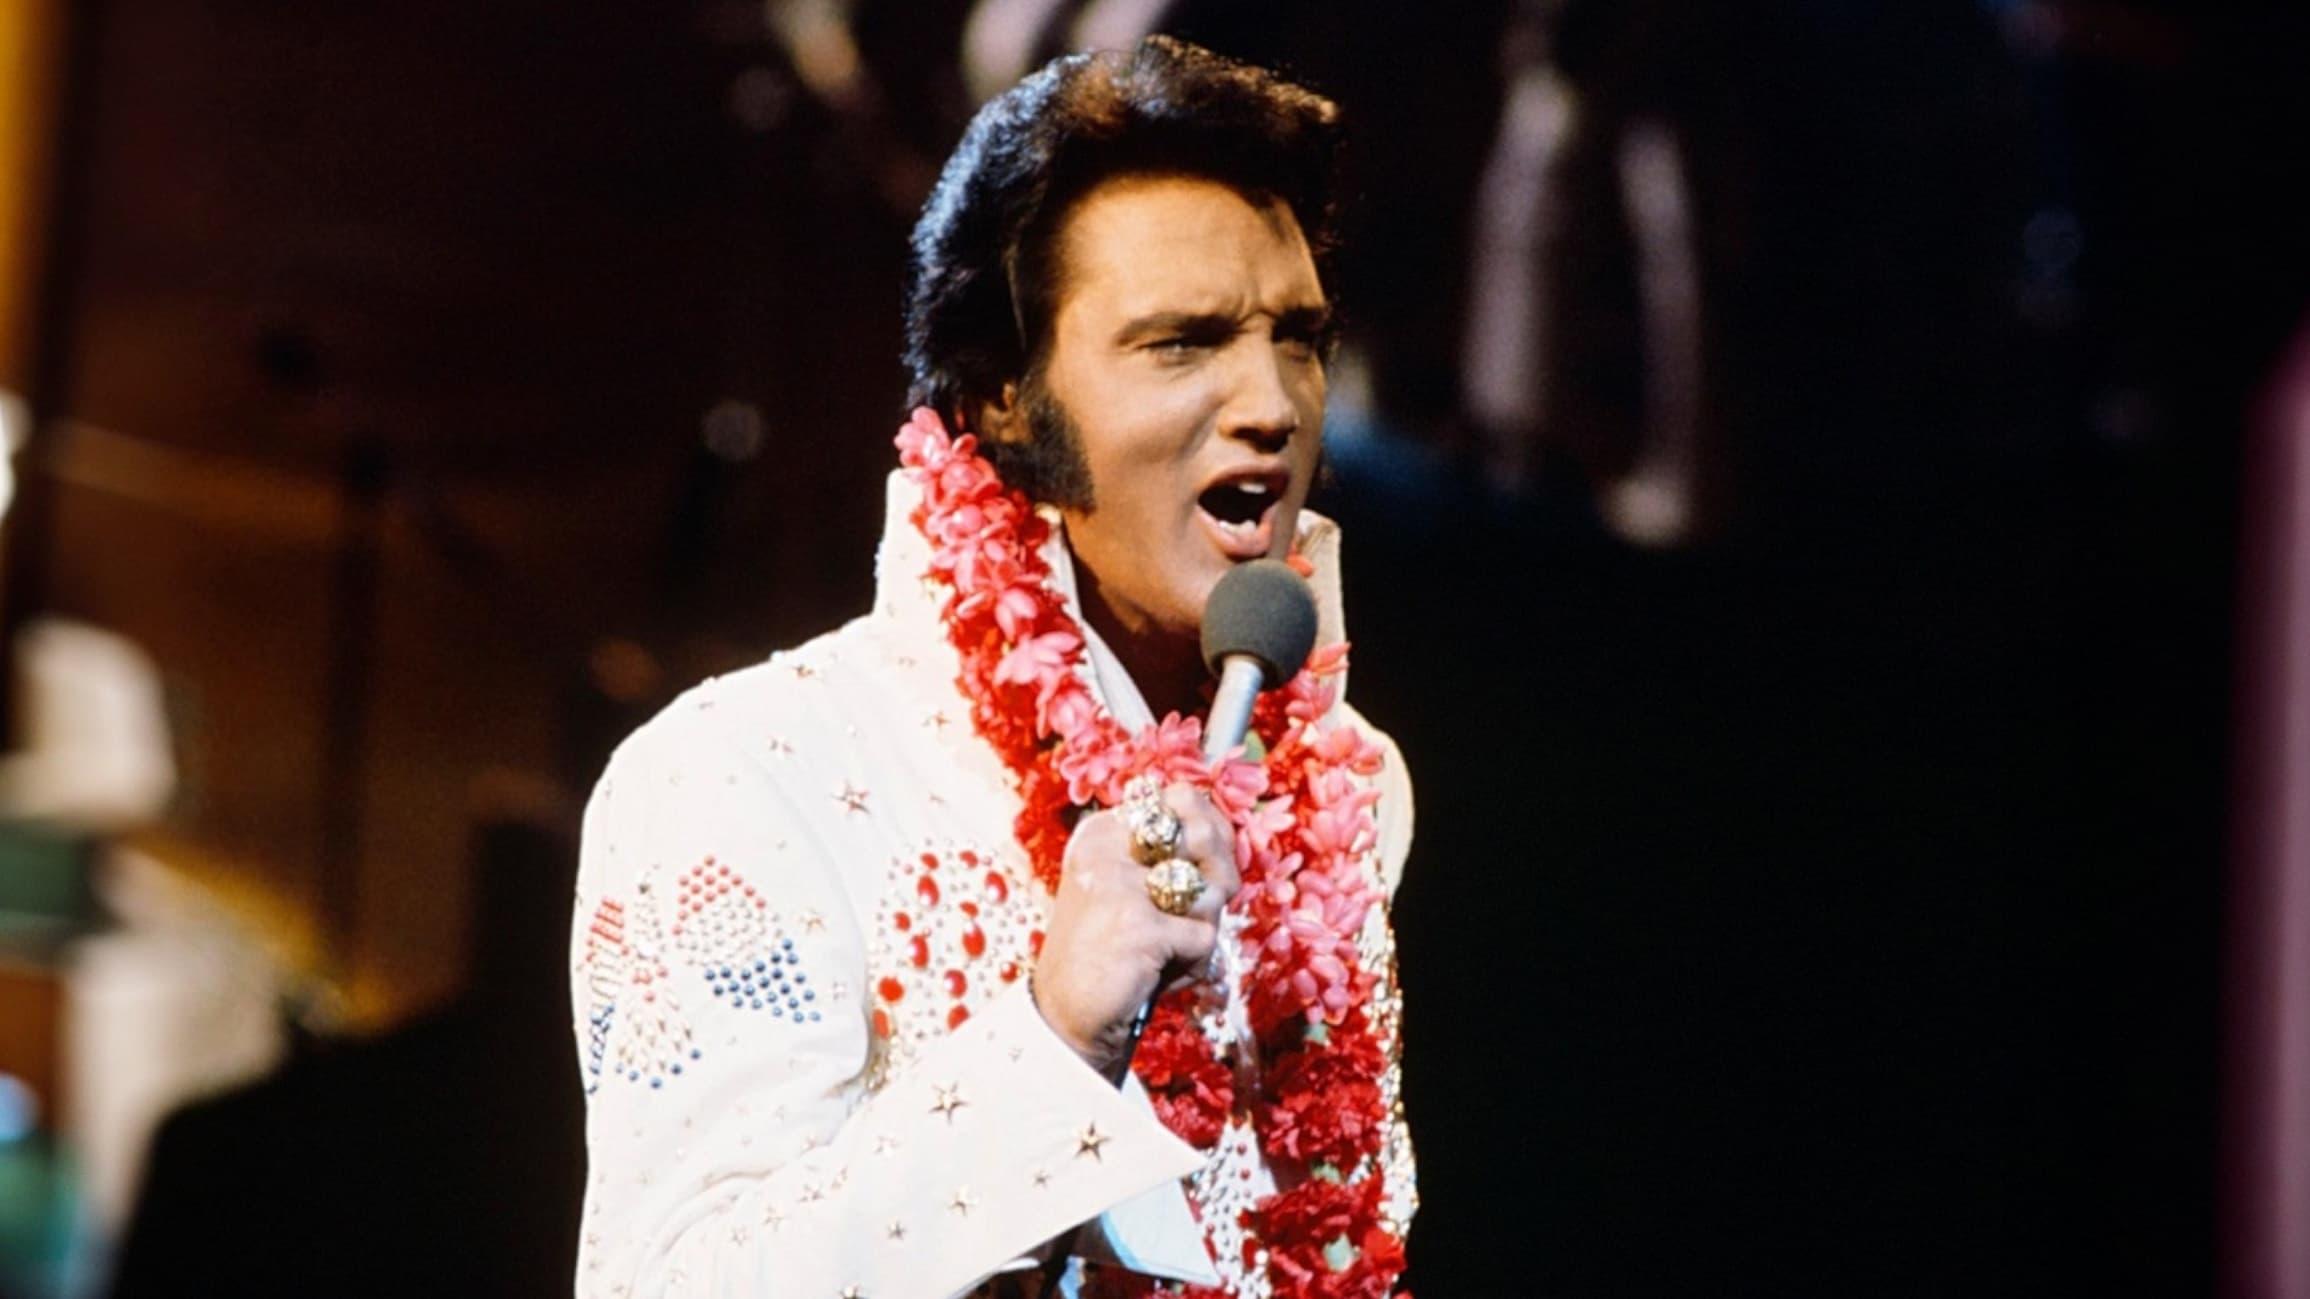 Elvis - Aloha from Hawaii backdrop